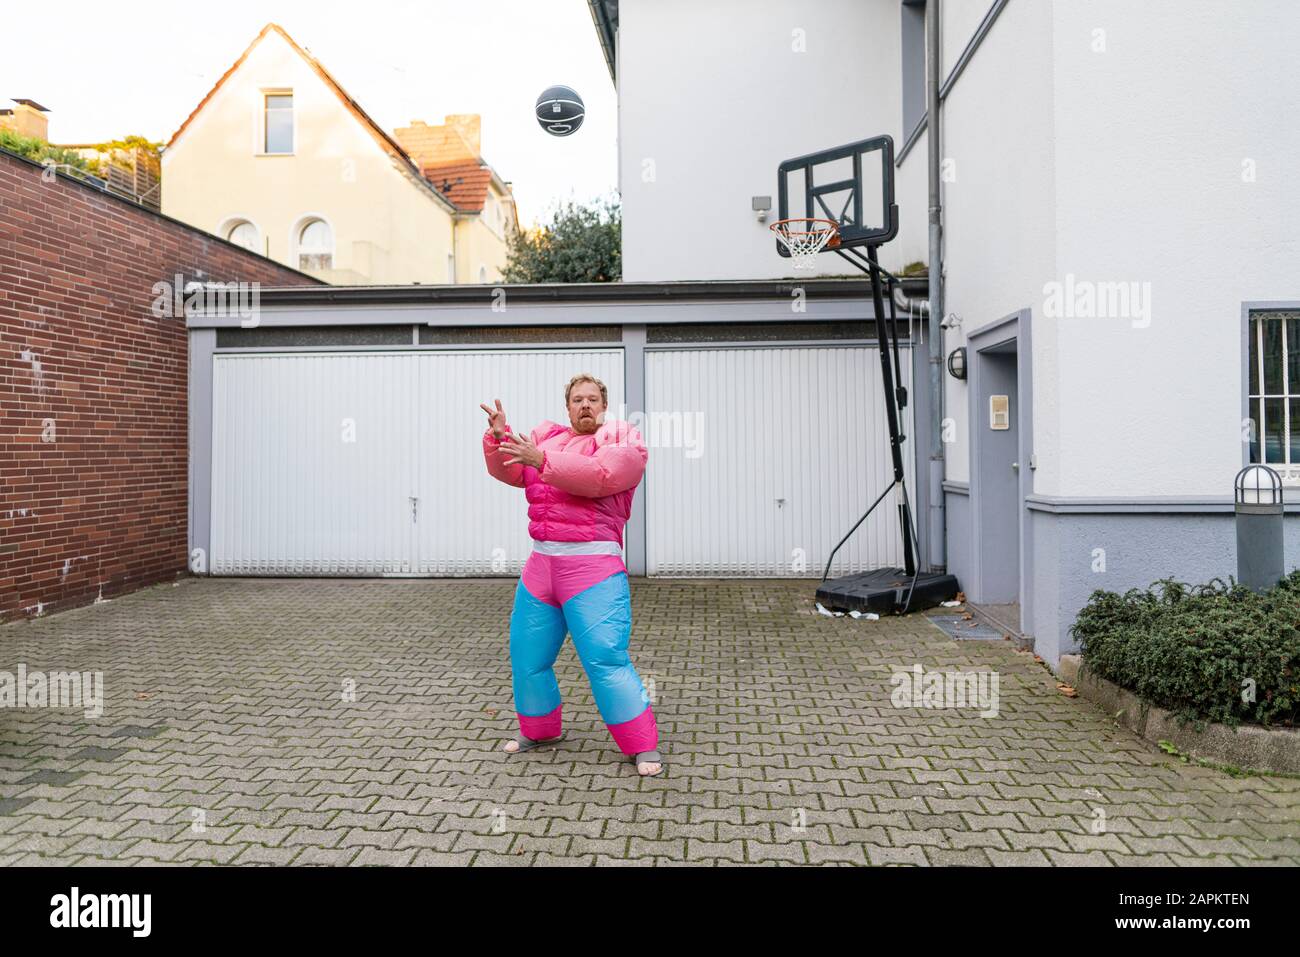 Porträt eines Mannes mit Basketball mit pinkfarbenem Bodybuilder-Kostüm Stockfoto